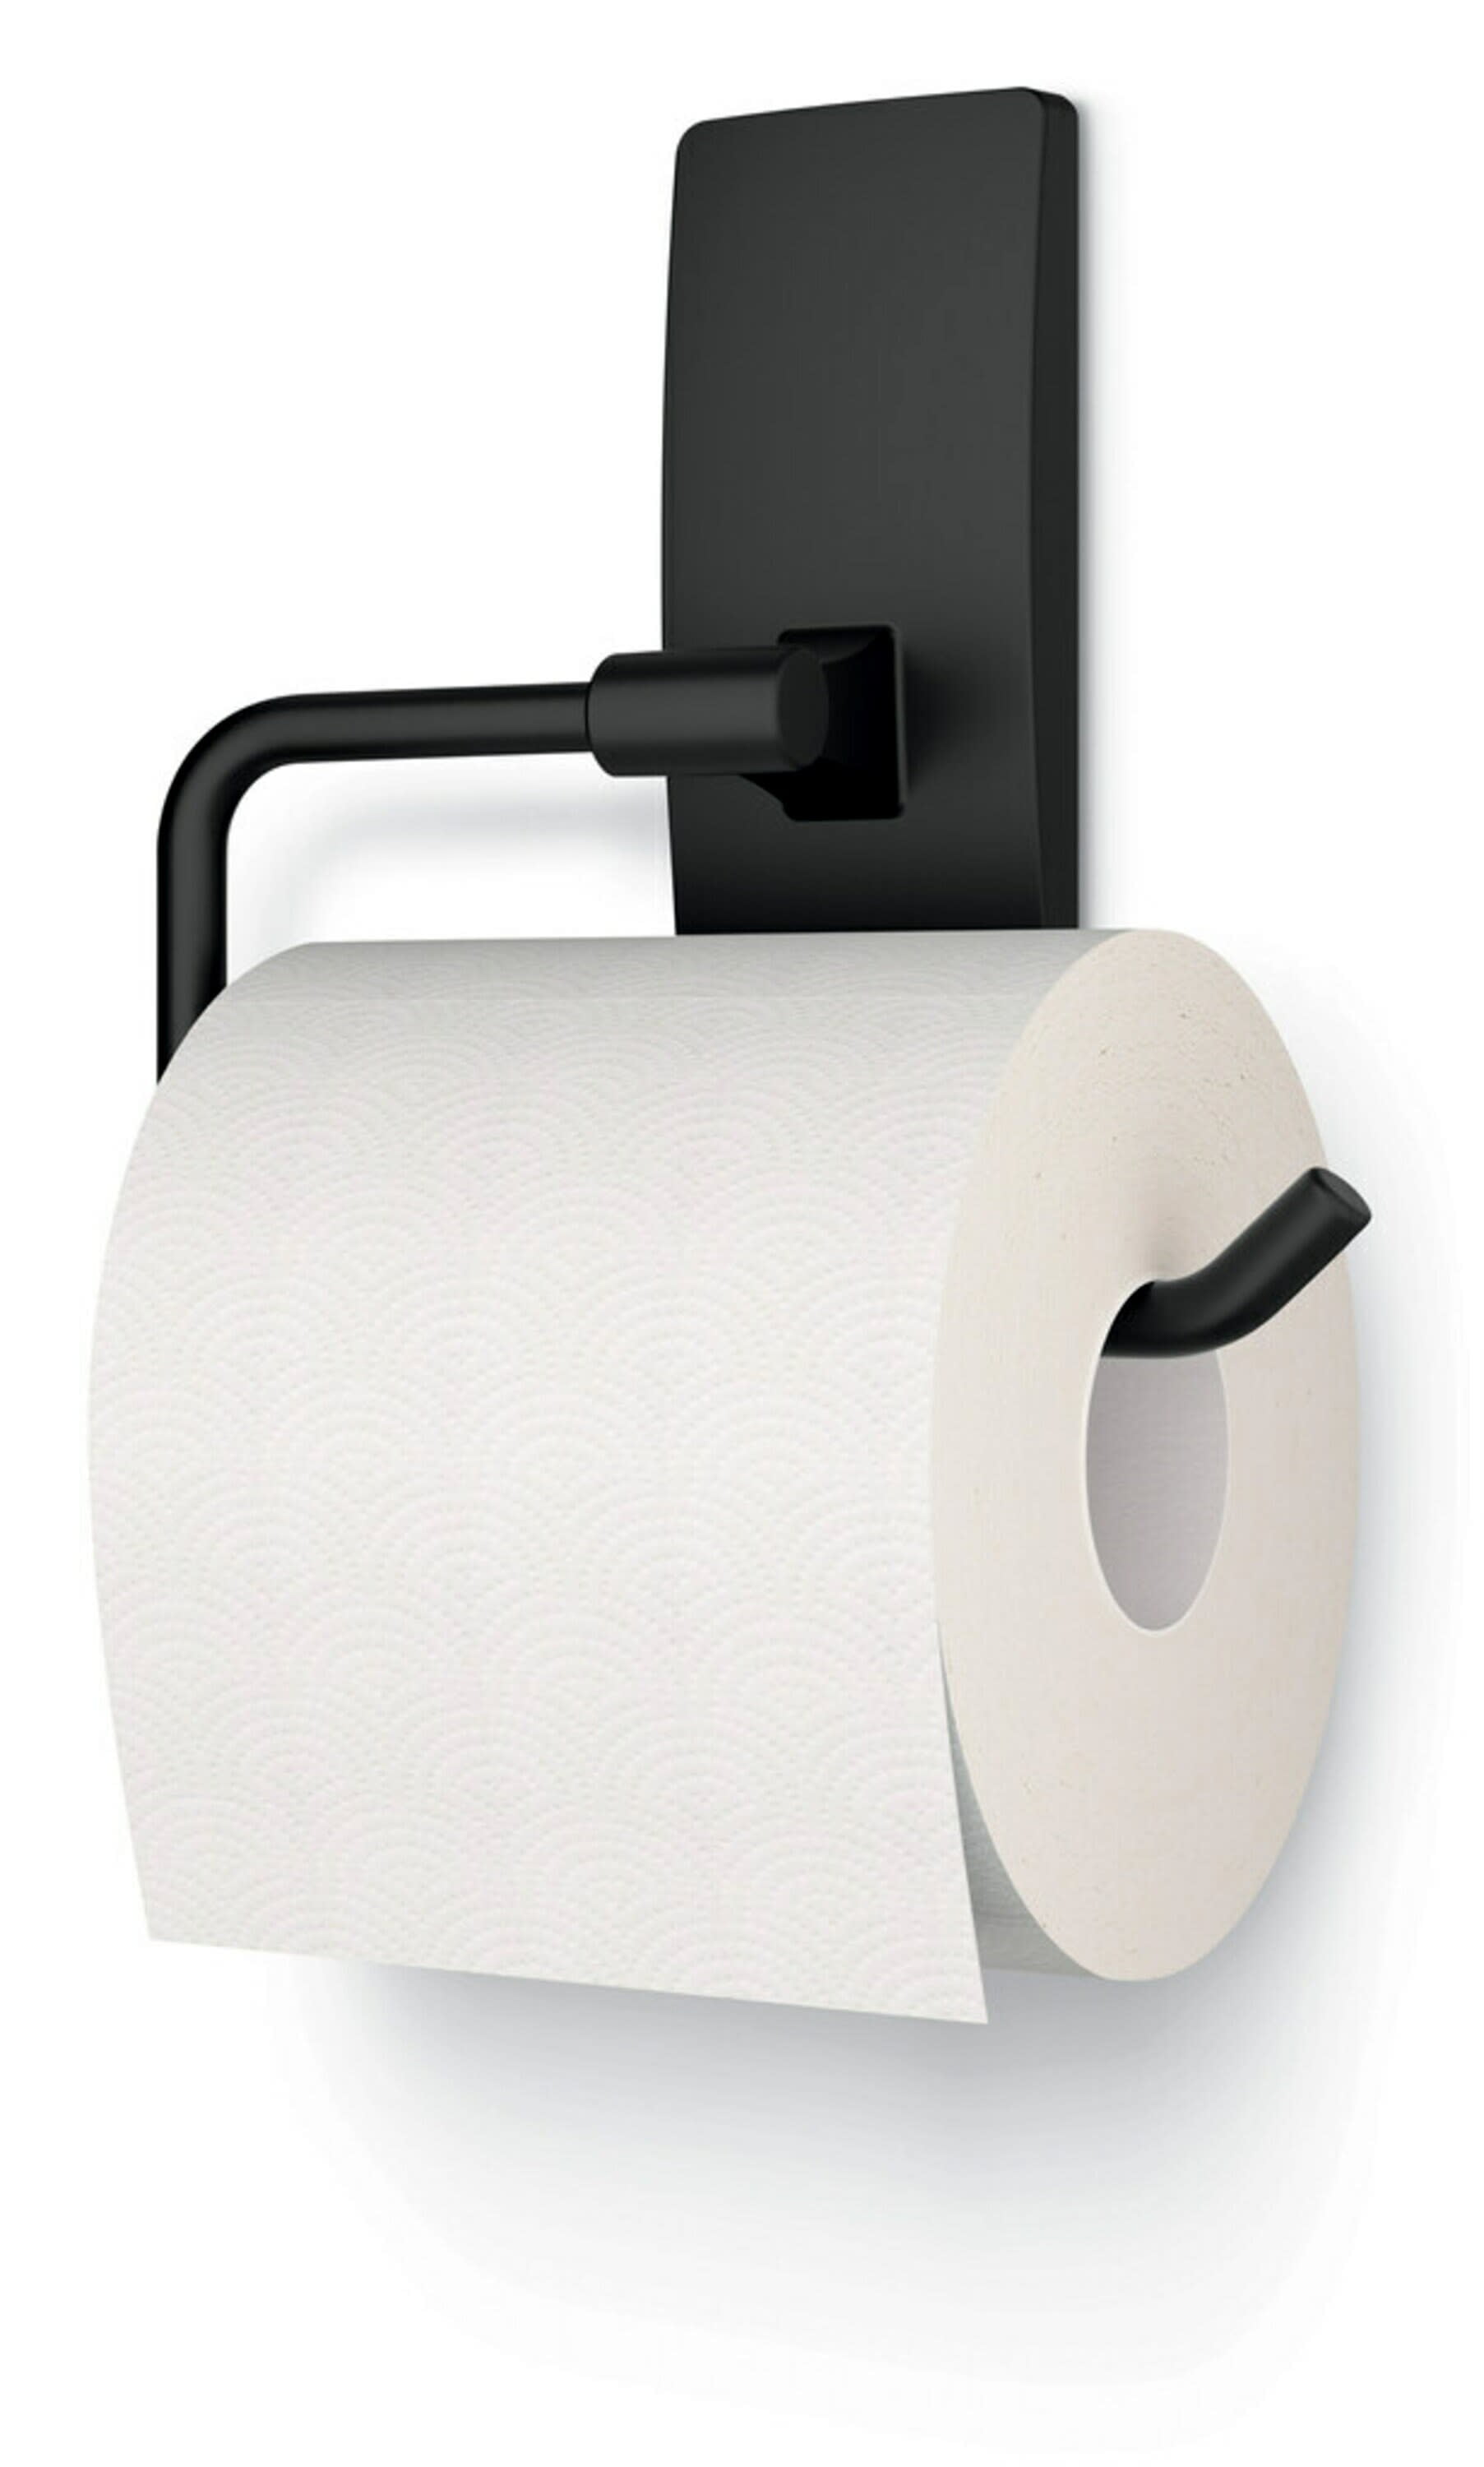  WZKALY Matte Black Recessed Toilet Paper Holder for